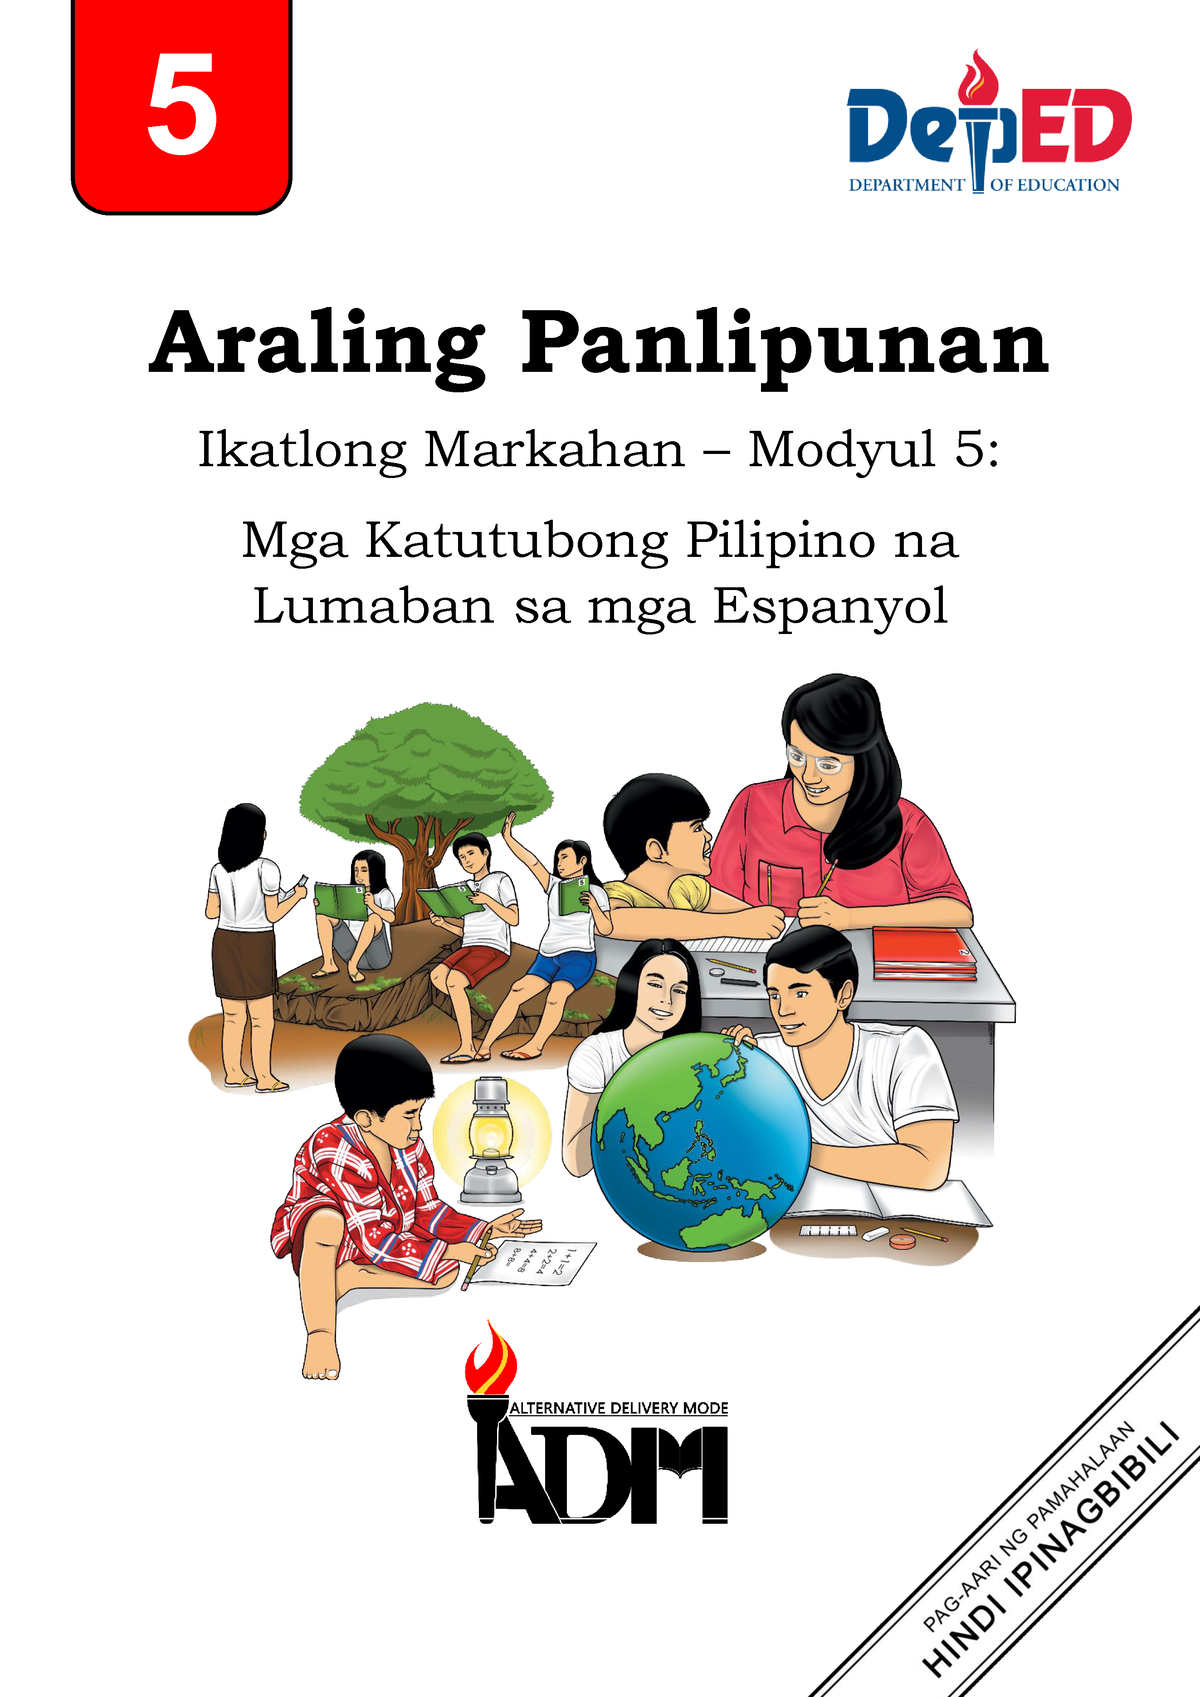 Araling Panlipunan 5 Quarter 3 Module 5 Volume 4 Learning Materials For Grade 5 Araling 0387